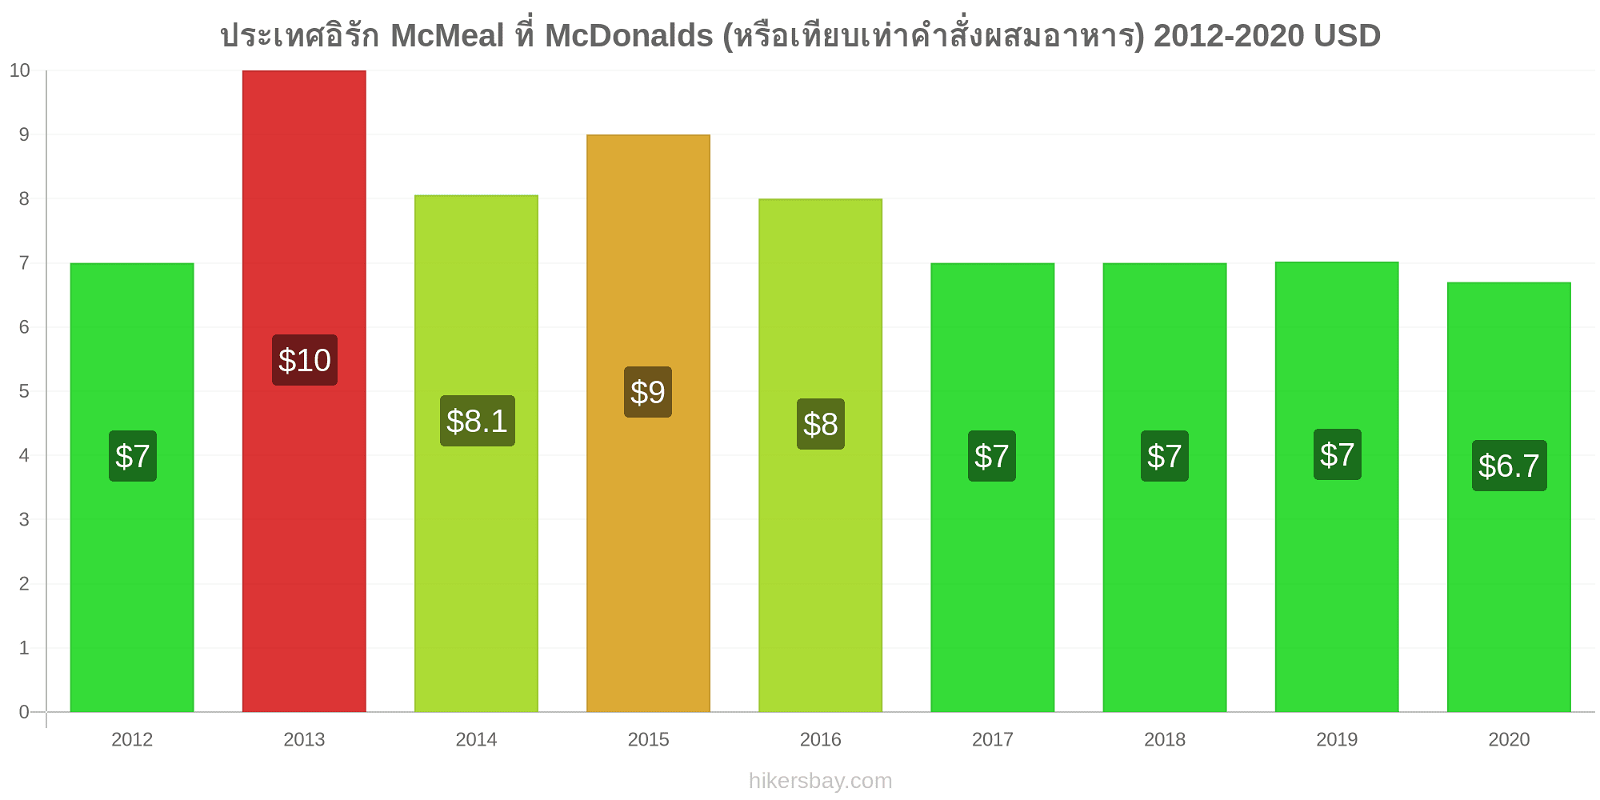 ประเทศอิรัก การเปลี่ยนแปลงราคา McMeal ที่ McDonalds (หรือเทียบเท่าคำสั่งผสมอาหาร) hikersbay.com